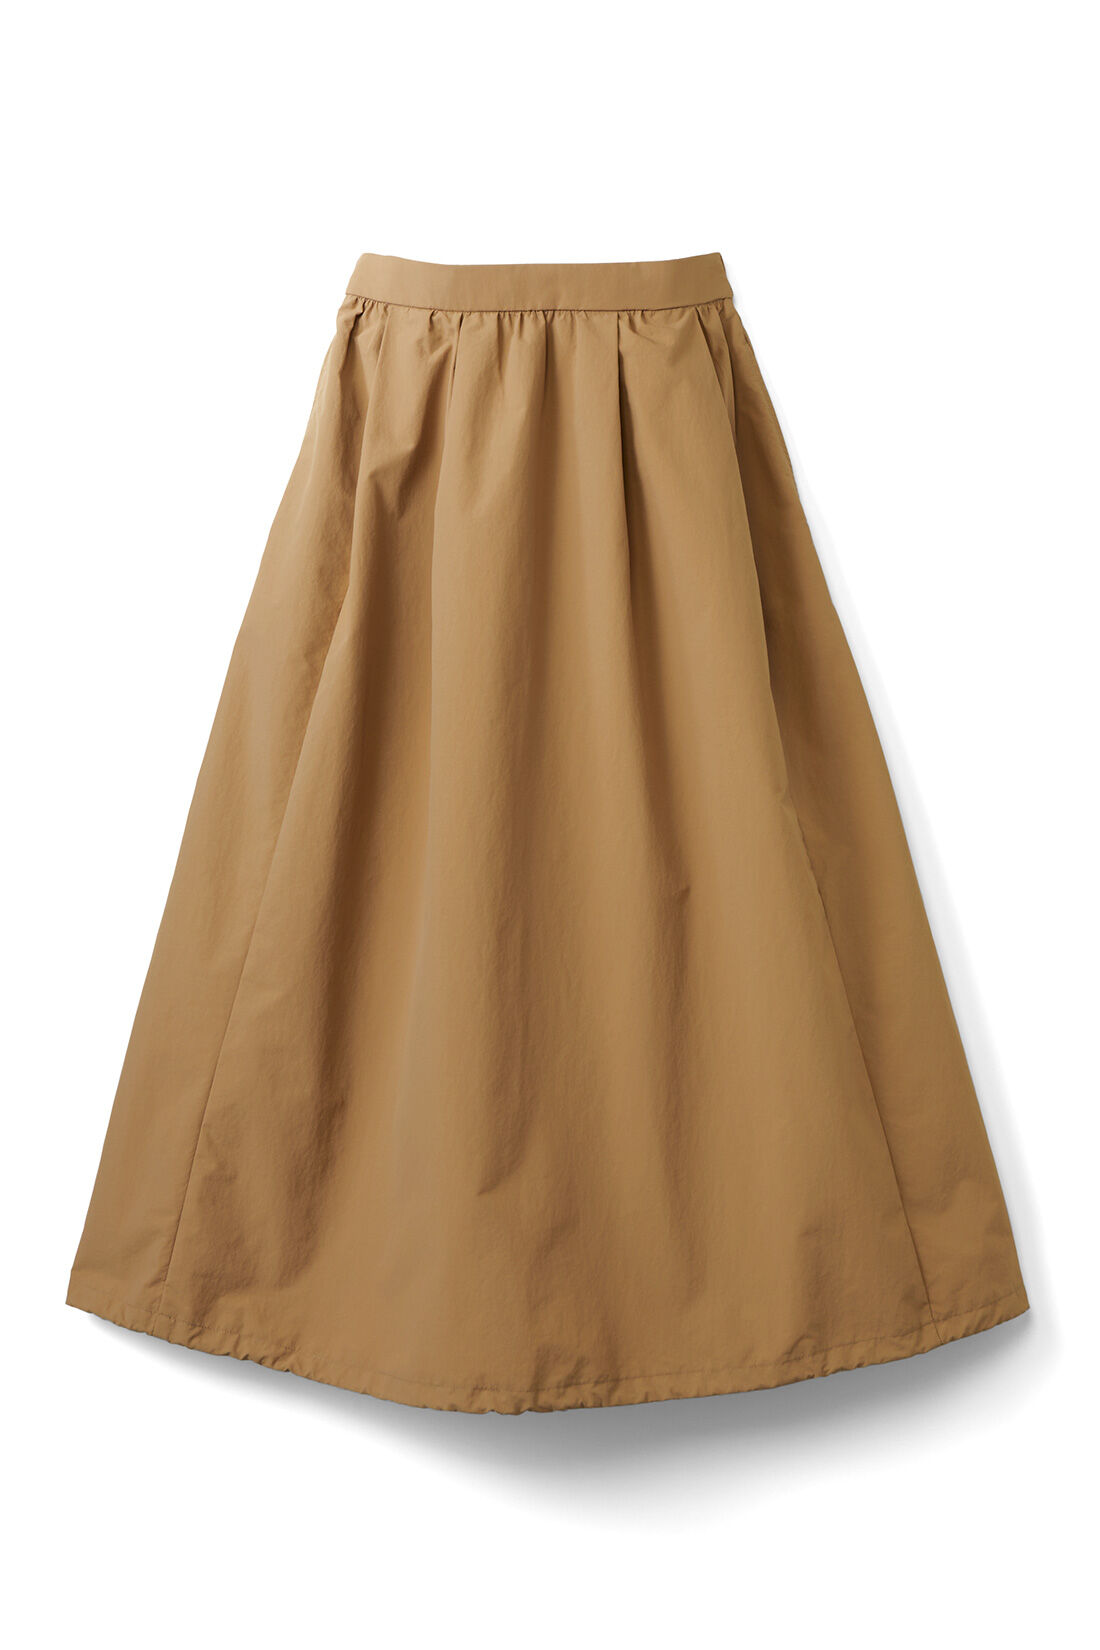 IEDIT[イディット]　撥水＆UVカットがうれしい 2-WAYシルエットスカート|ドロストを広げるとたっぷりのフレアースカートにも。2-WAYで楽しめます。